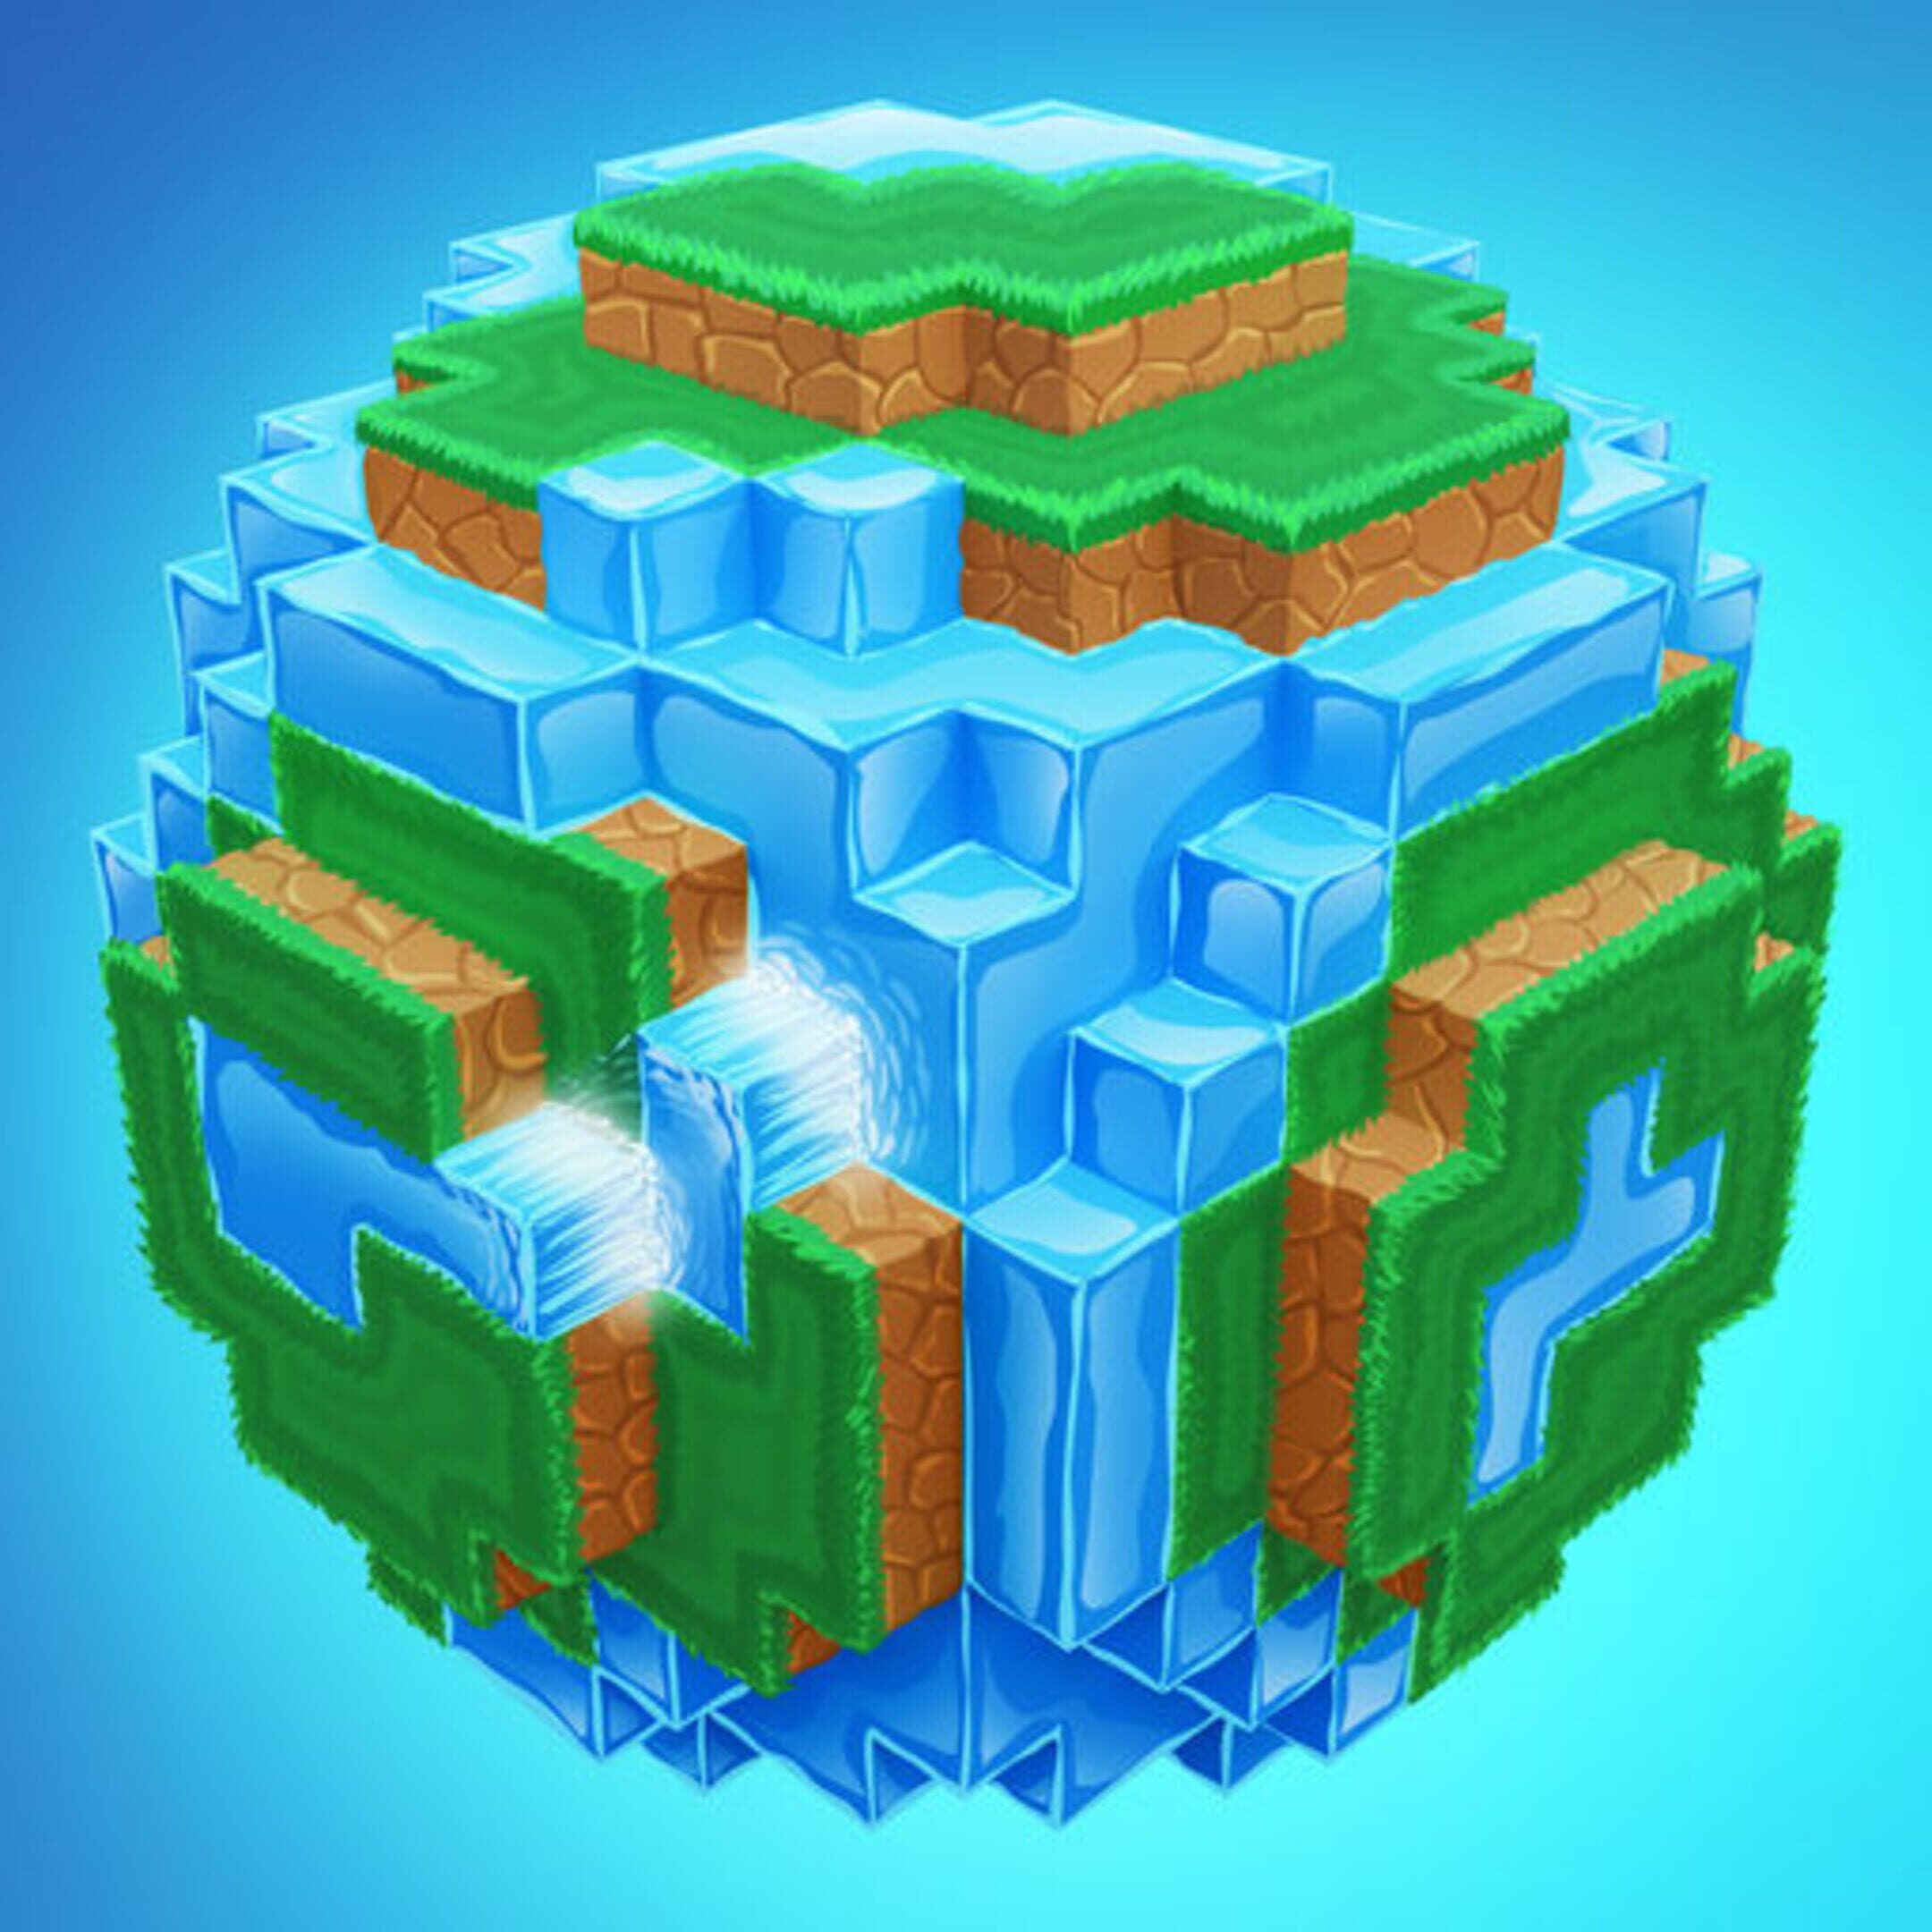 Сервер cube